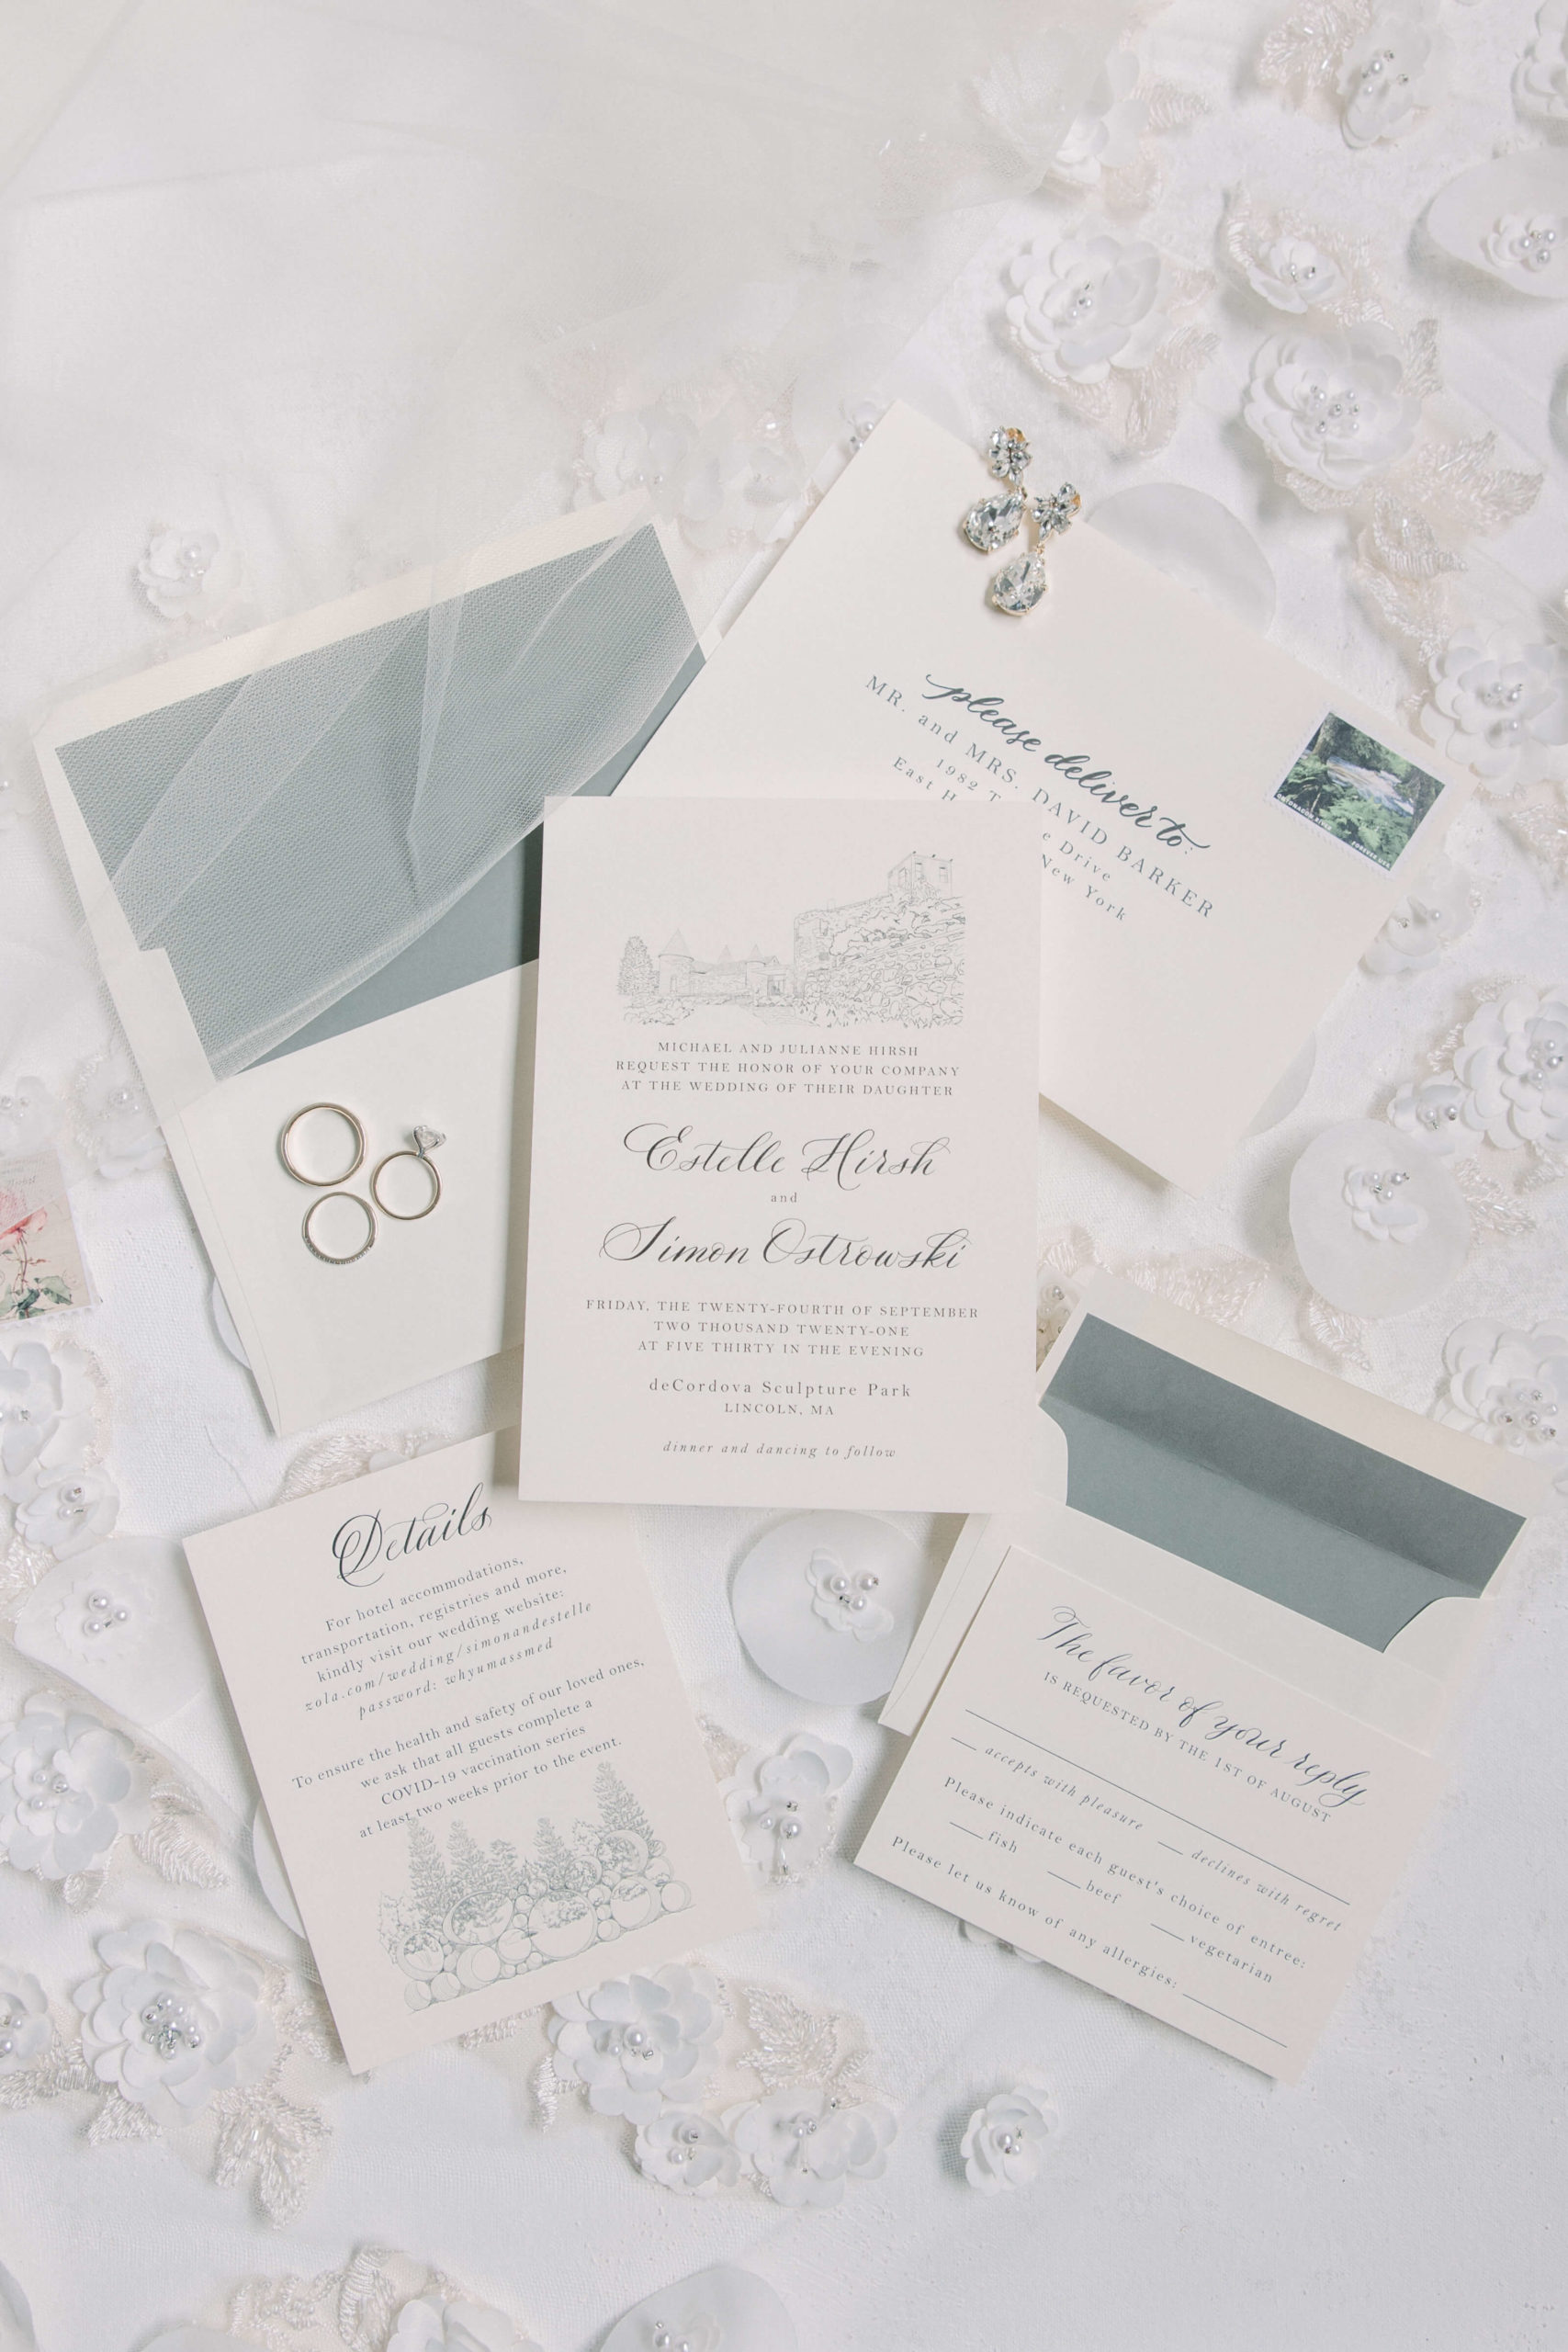 Wedding' an inviting tale – Boston Herald